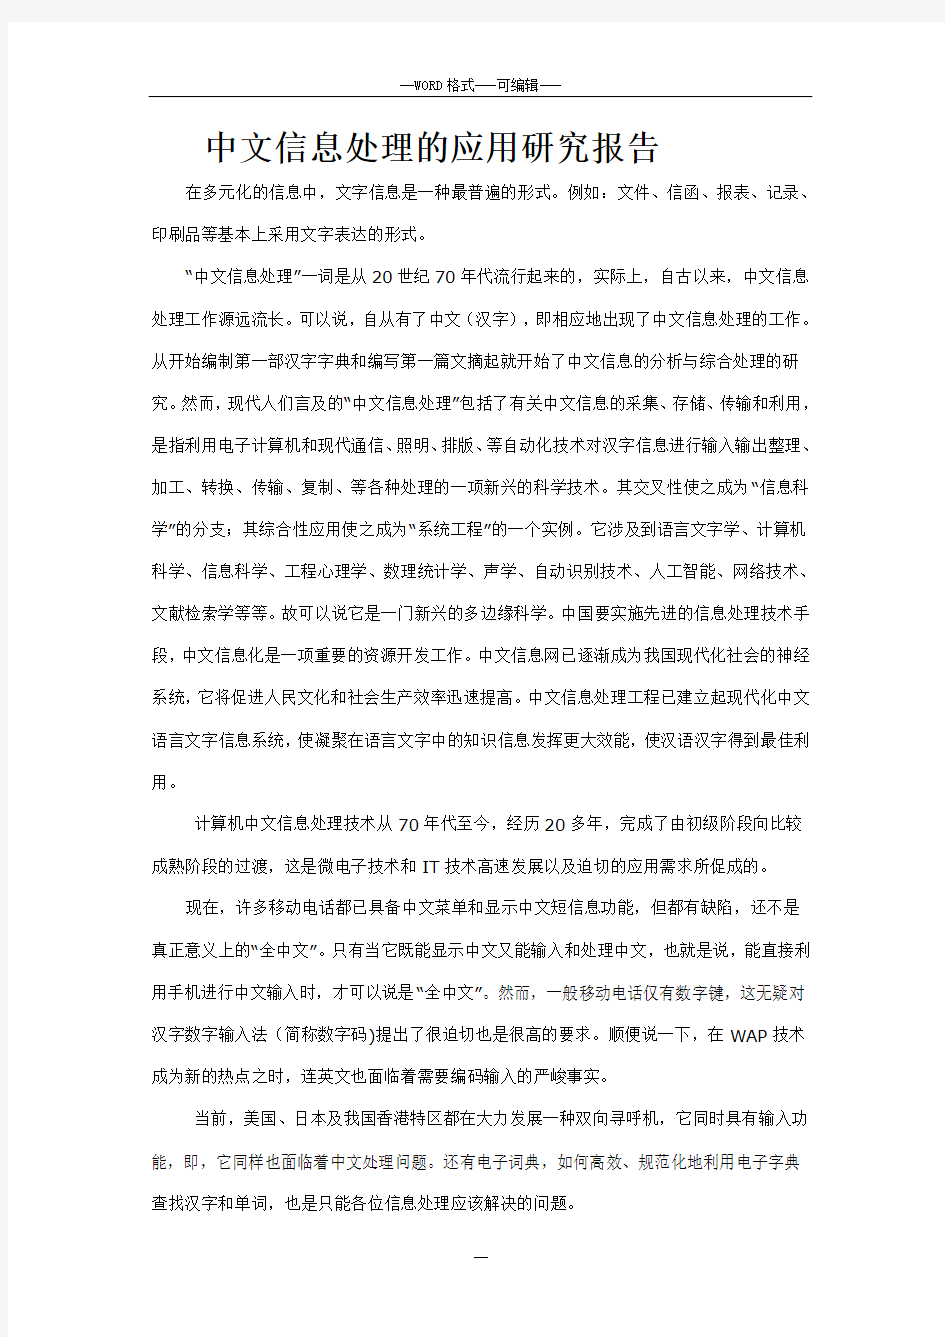 中文信息处理的应用的研究报告